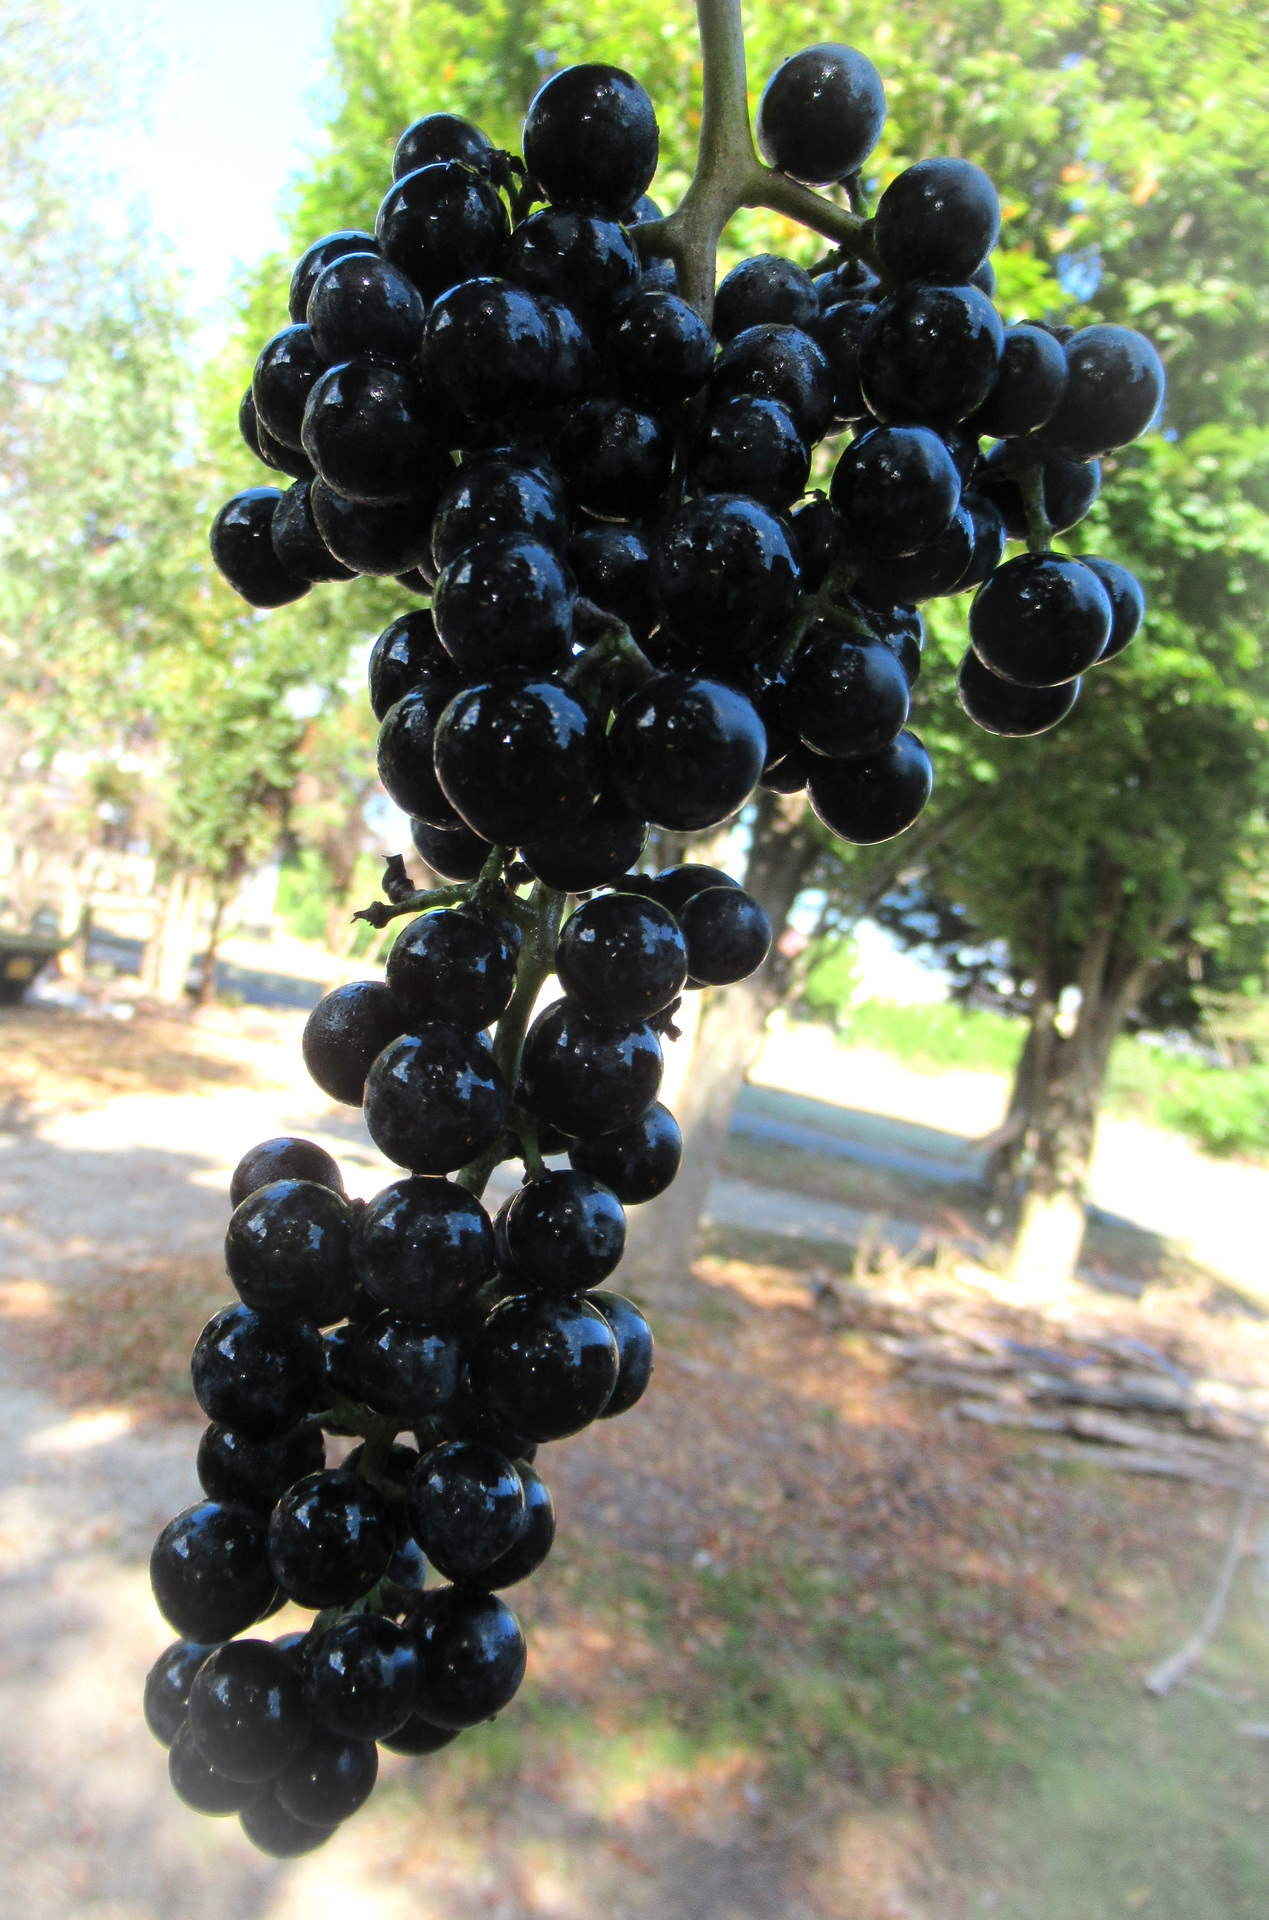 この一滴が脳に効く といわれる エビカズラ 山葡萄 の発酵が自家用ビオナート式ワインに Vionart ビオナート 藤本発酵農園